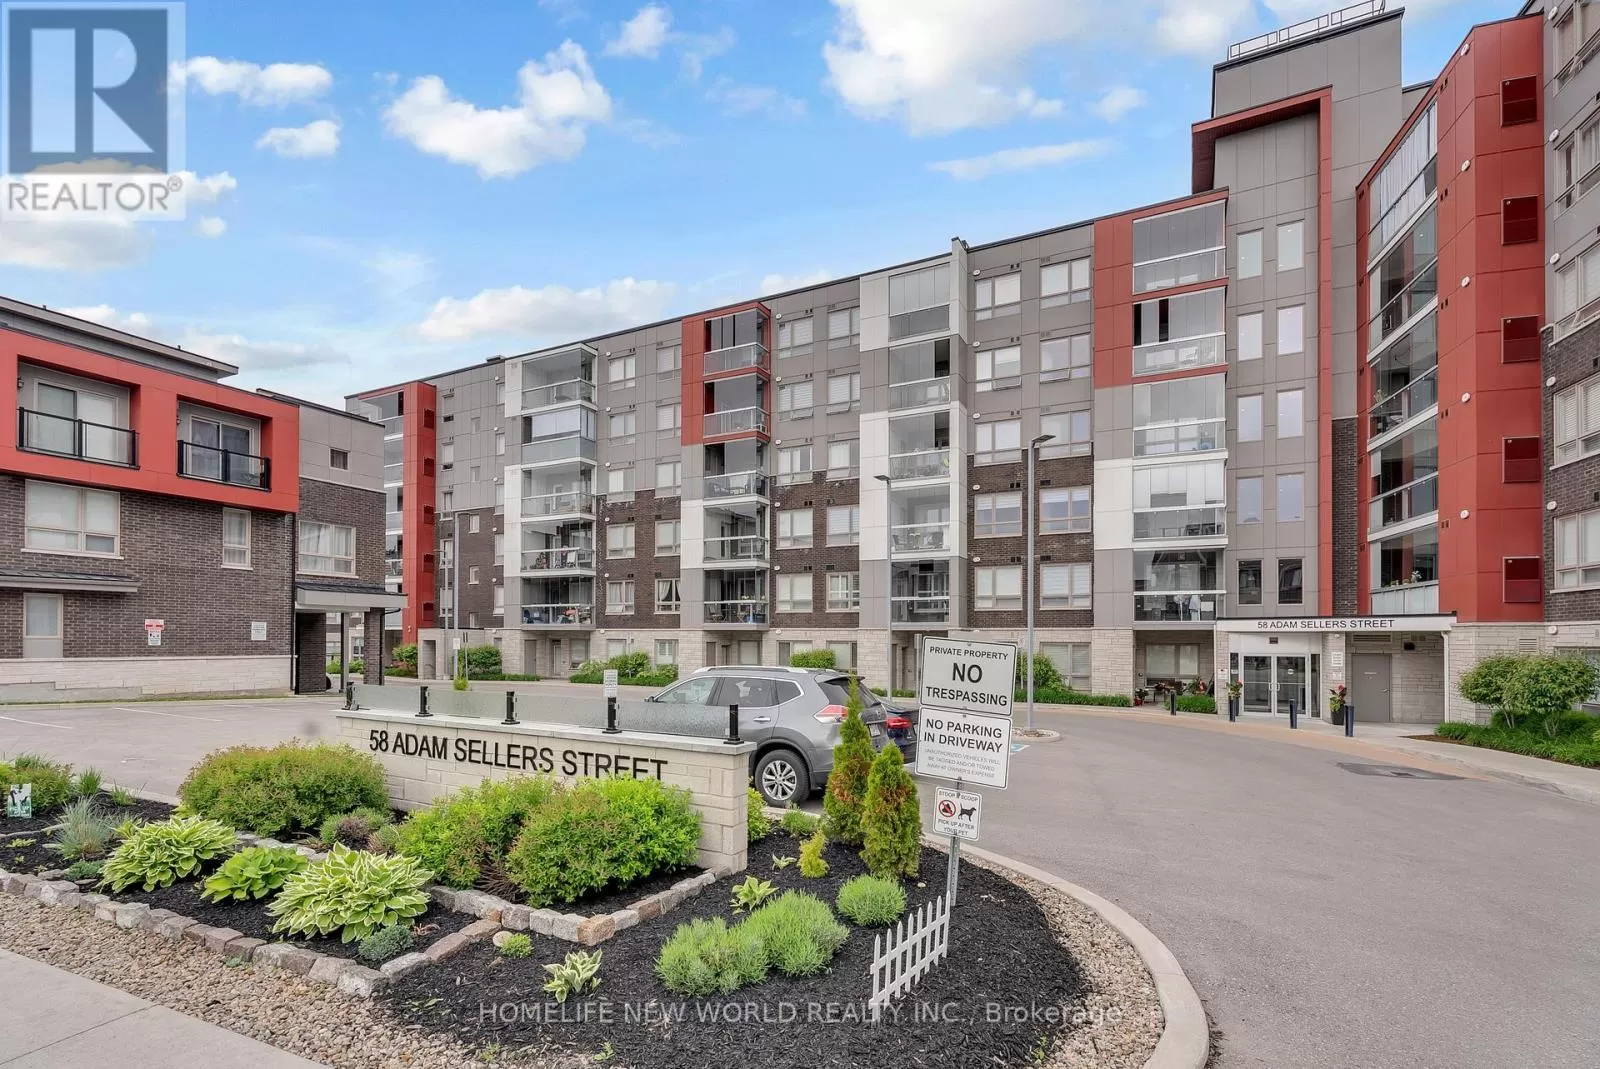 Apartment for rent: 313 - 58 Adam Sellers Street, Markham, Ontario L6B 1P5